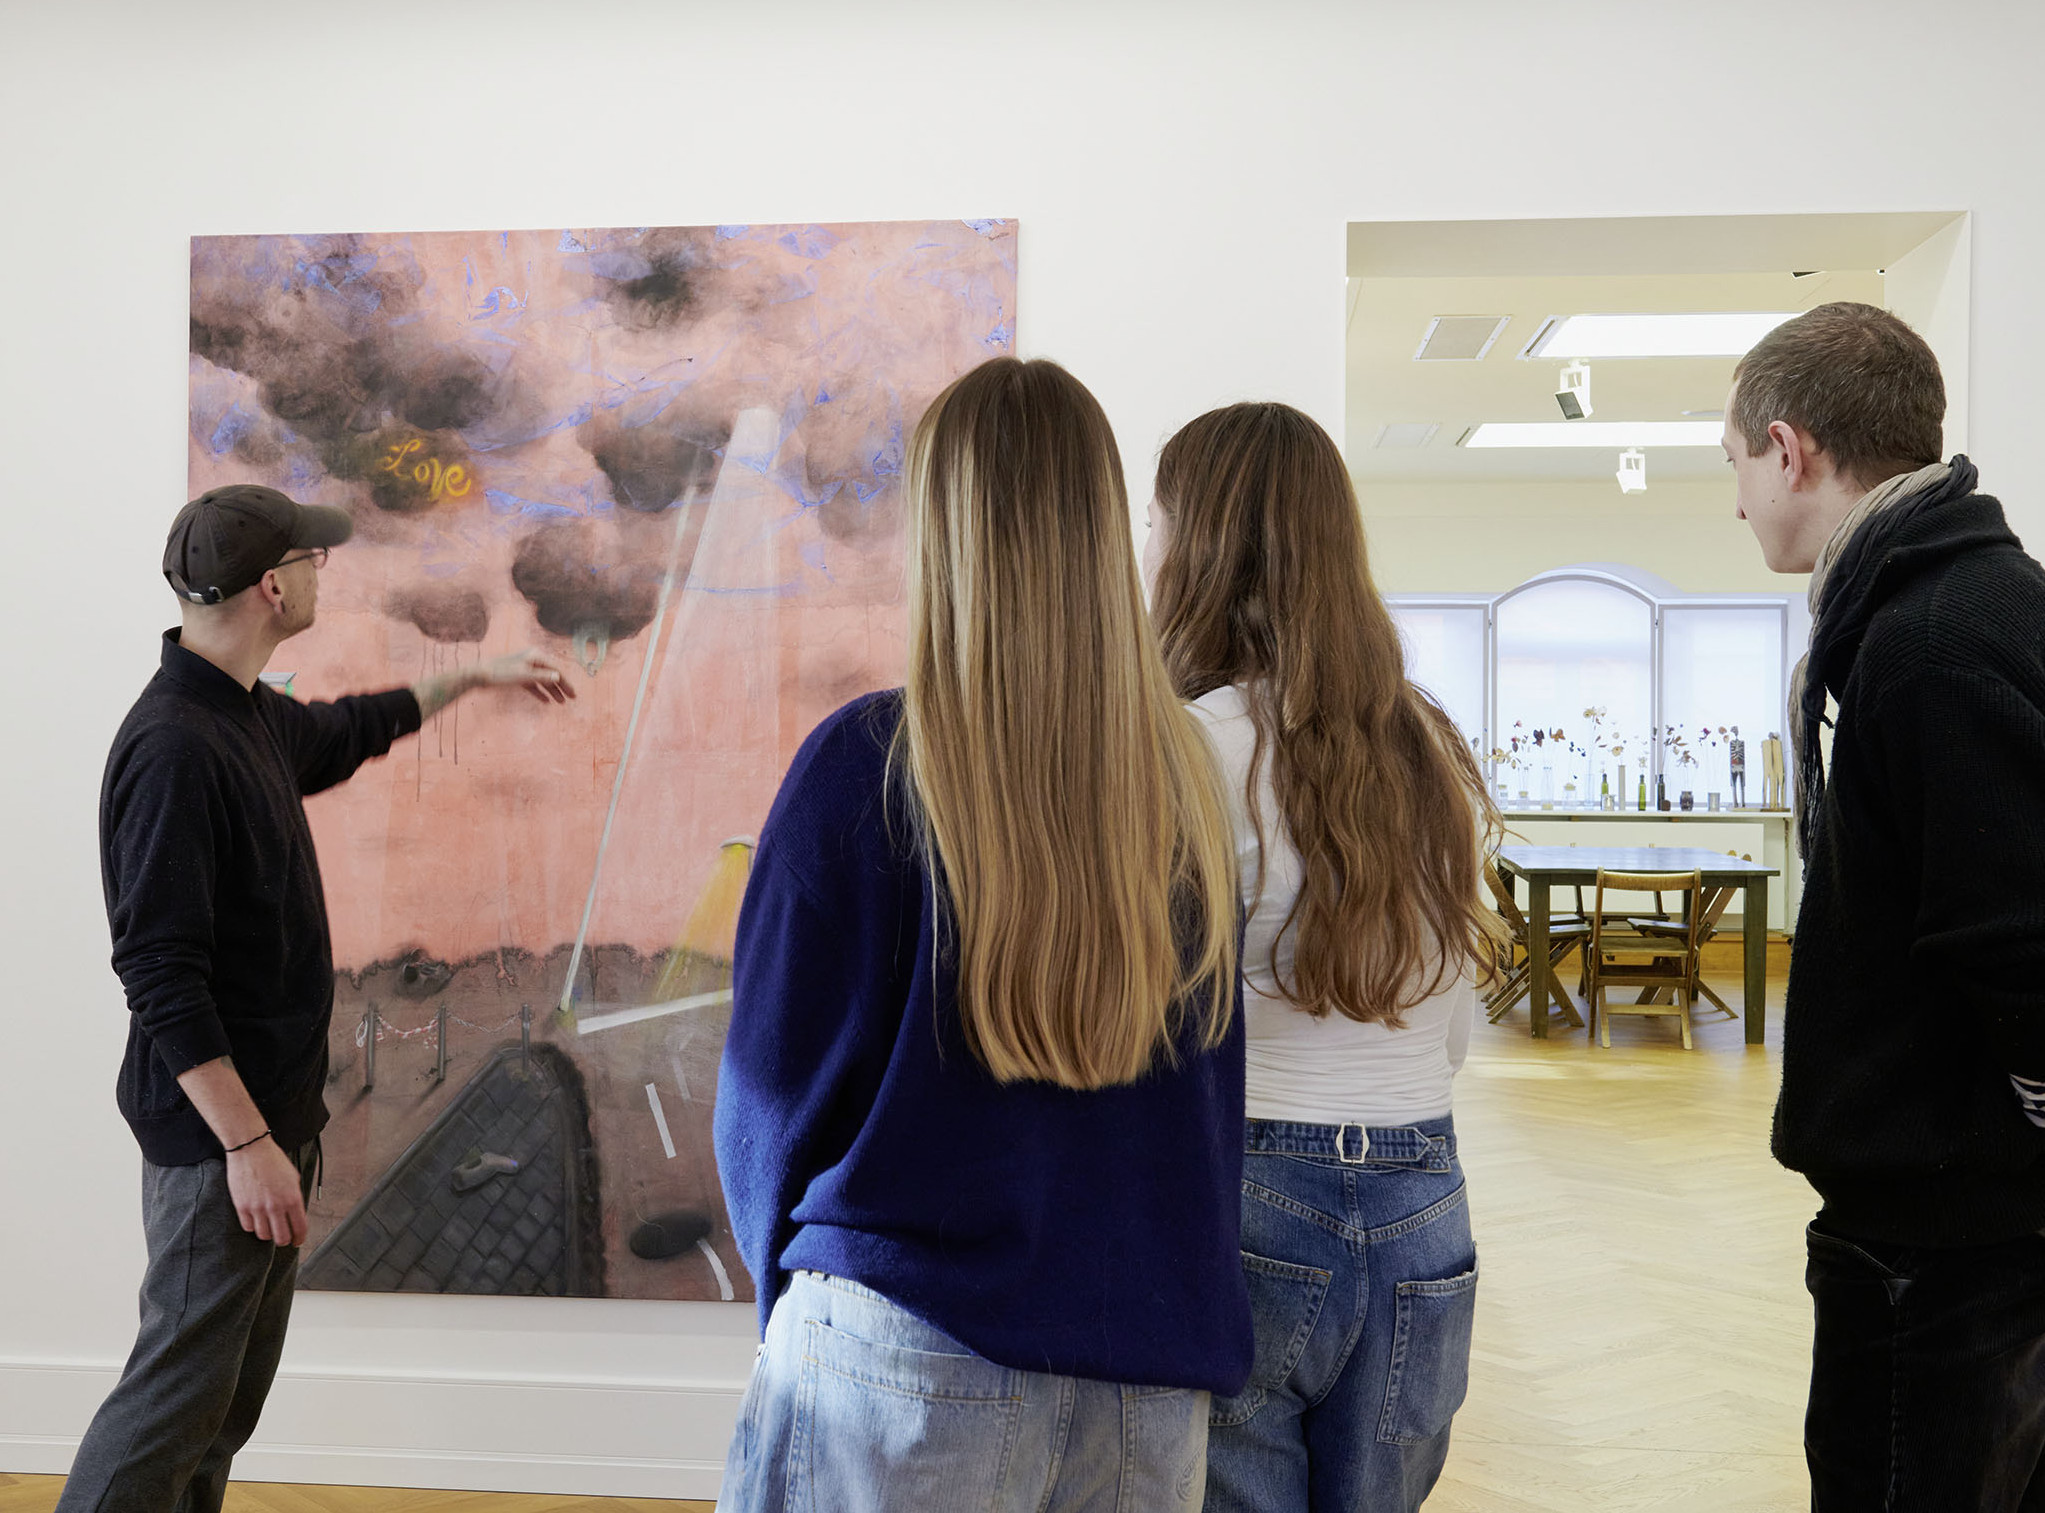 Die Fotoaufnahme zeigt drei Personen, zwei Frauen und ein Mann, vor einem Gemälde in der Ausstellung "Borgo Ensemble". Ein anderer Mann deutet auf ein Detail des Gemäldes und scheint es den anderen zu erläutern. Die Fotoaufnahme stammtm von Annette Kradisch.